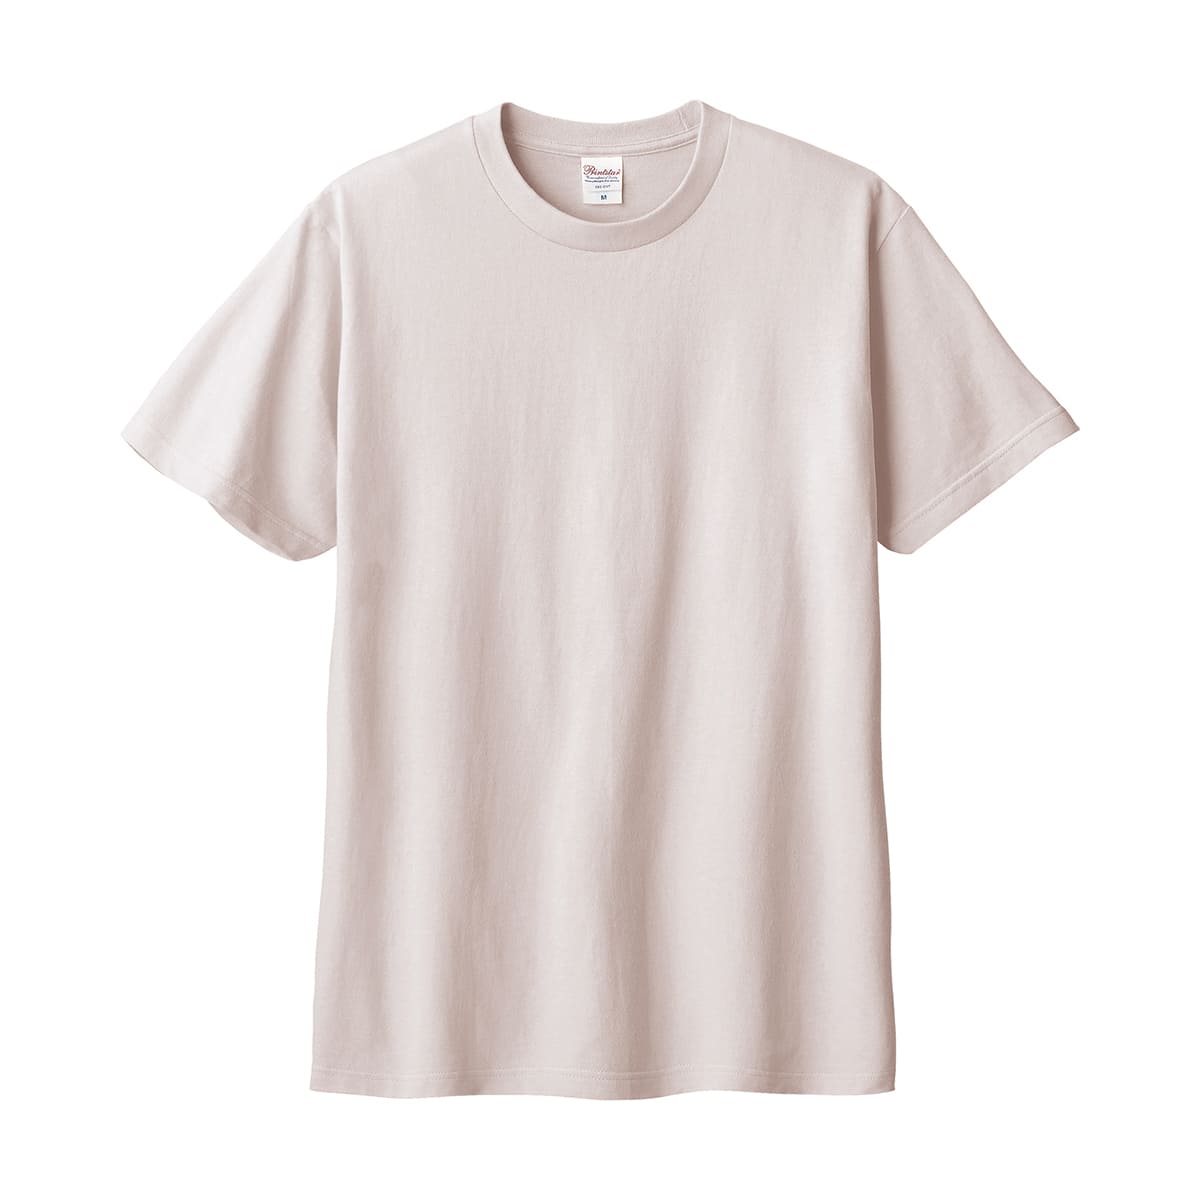 tシャツ Printstar 5.6オンス ヘビーウェイト リミテッドカラーTシャツ 00095-c...